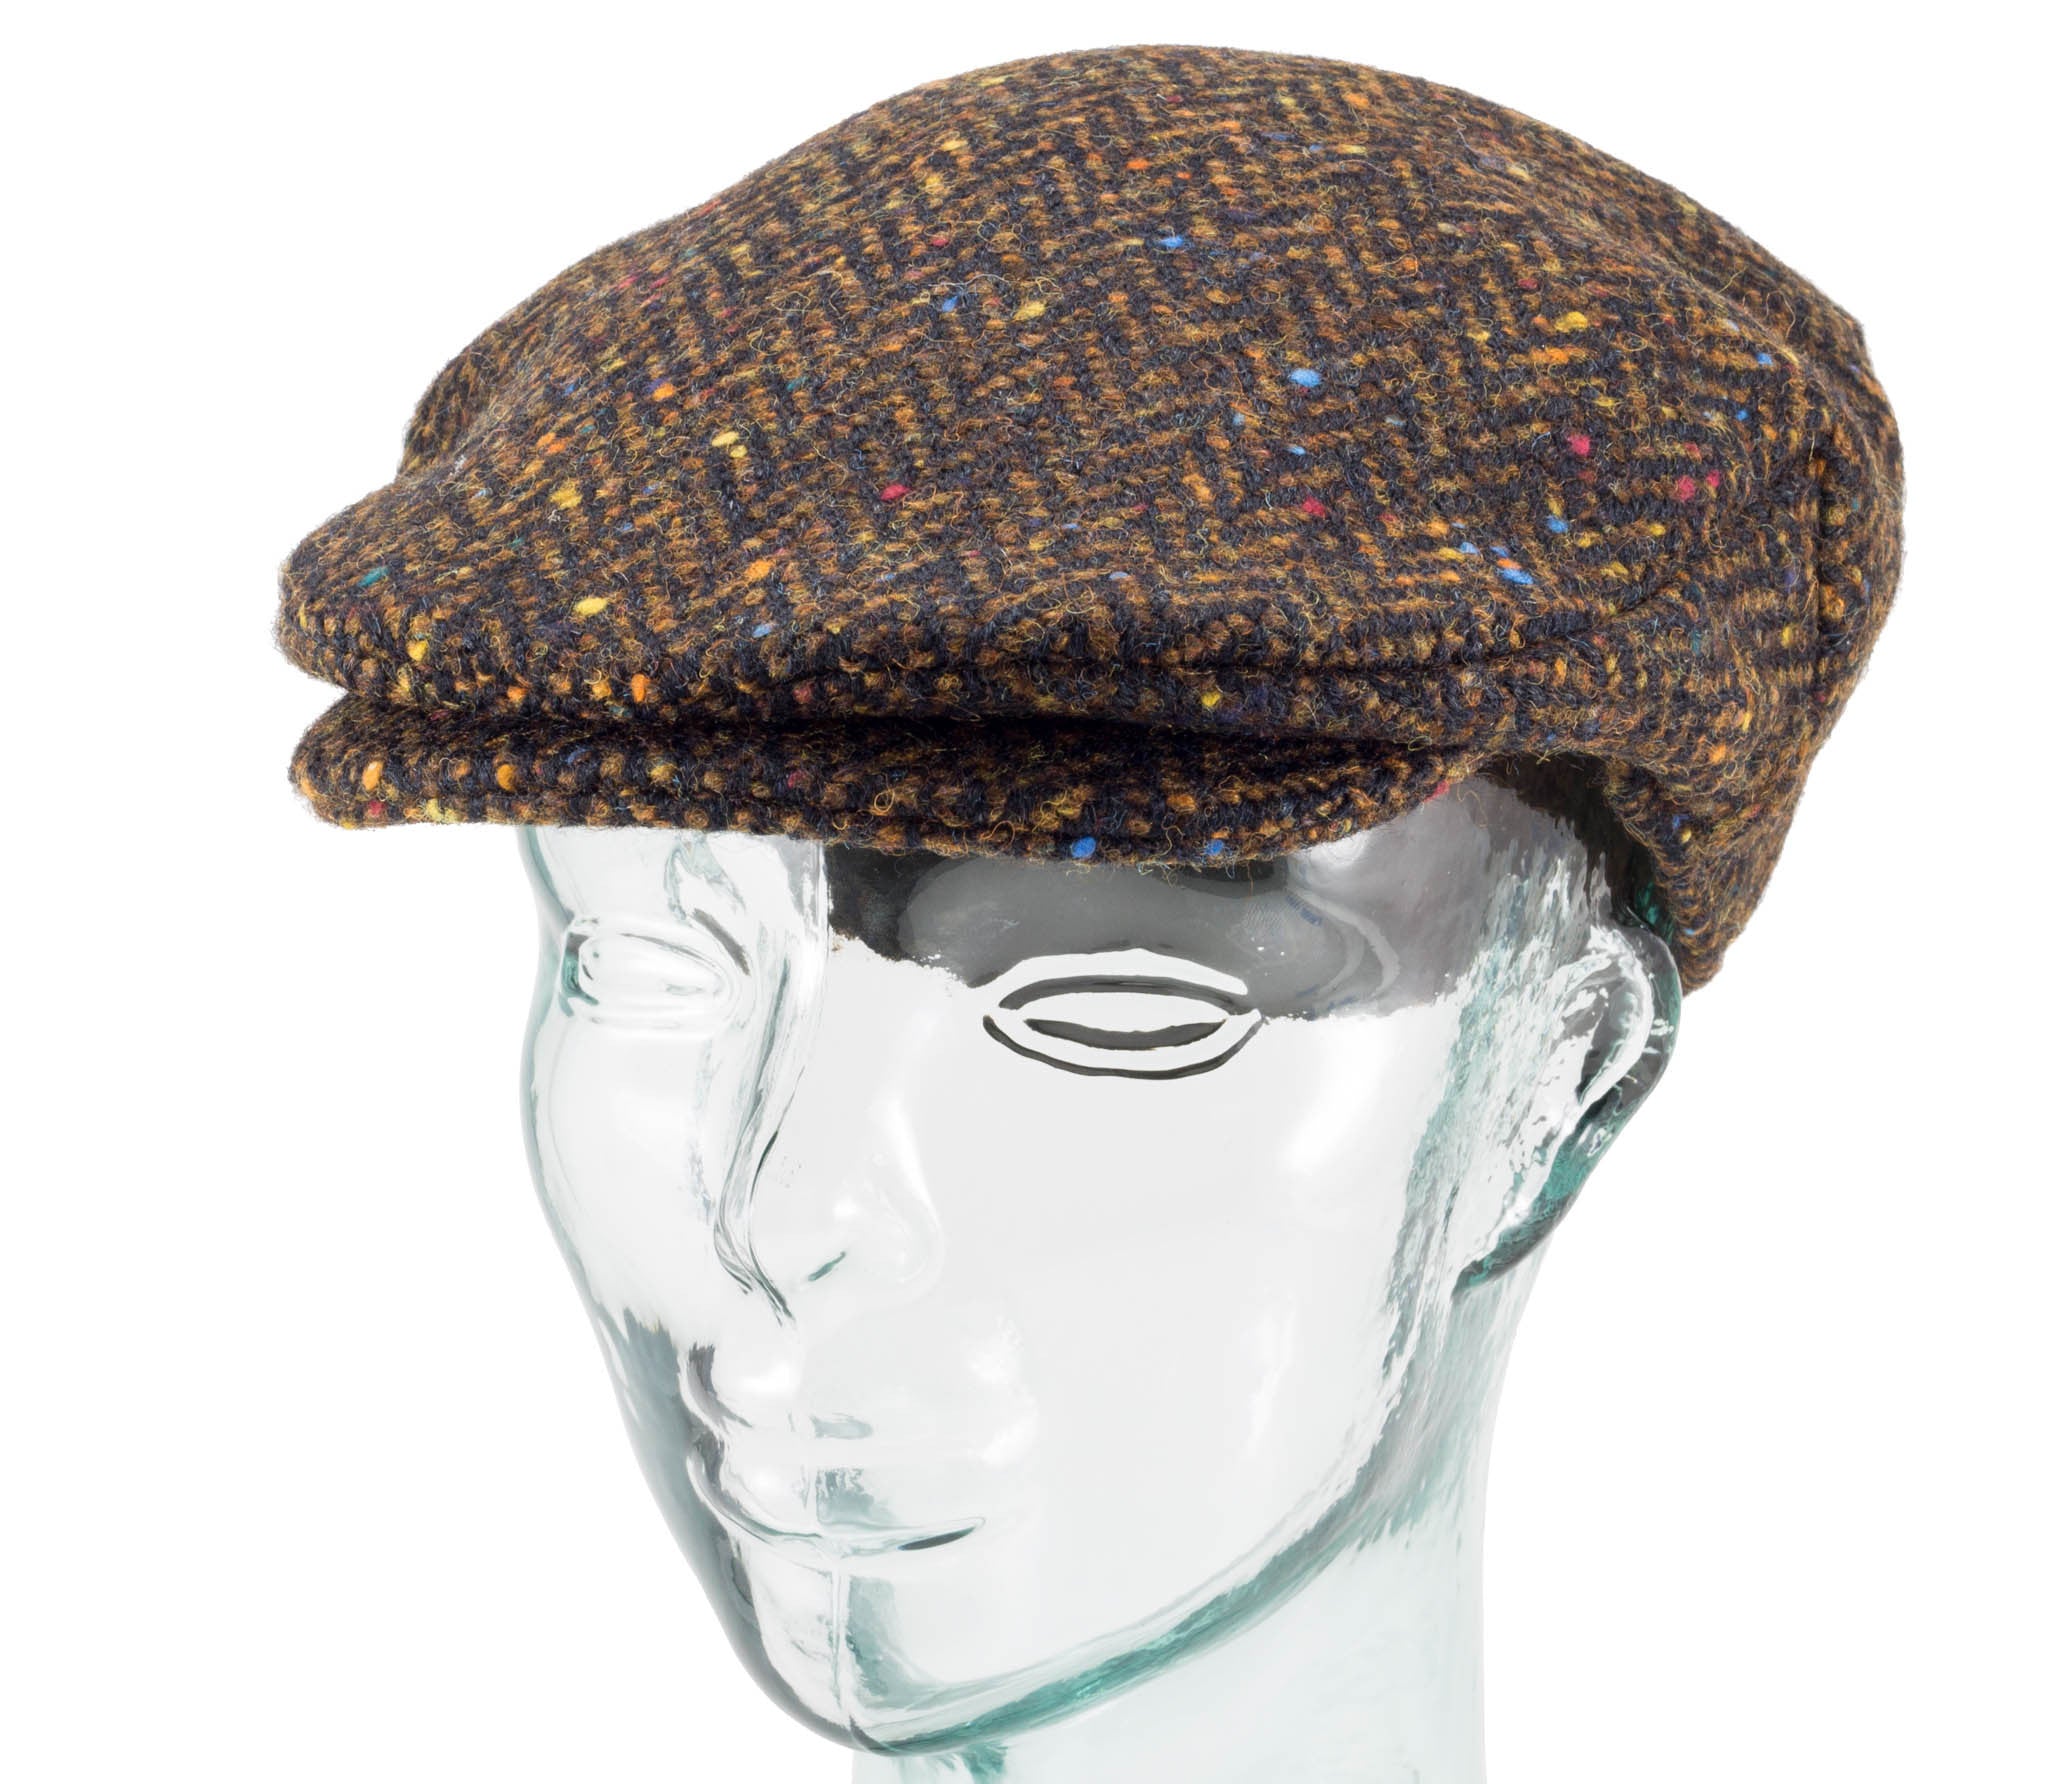 Handwoven Tweed - Vintage Style Cap